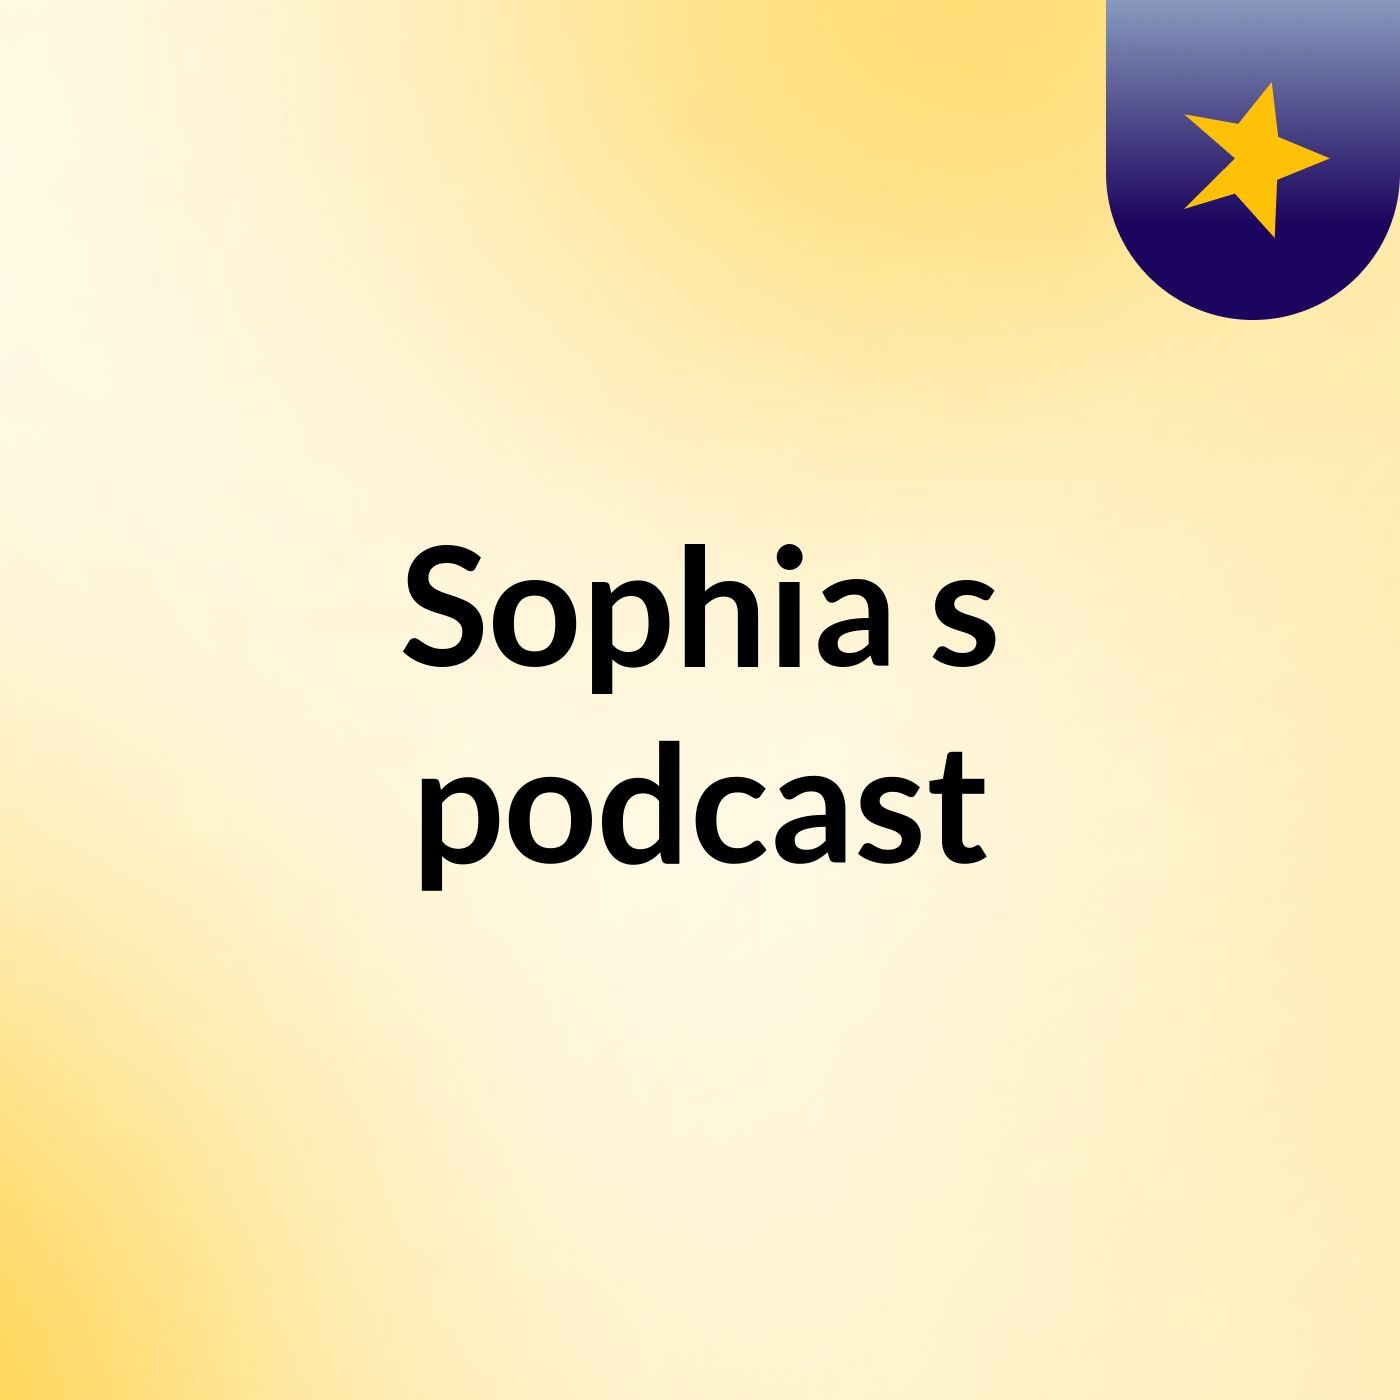 Sophia's podcast